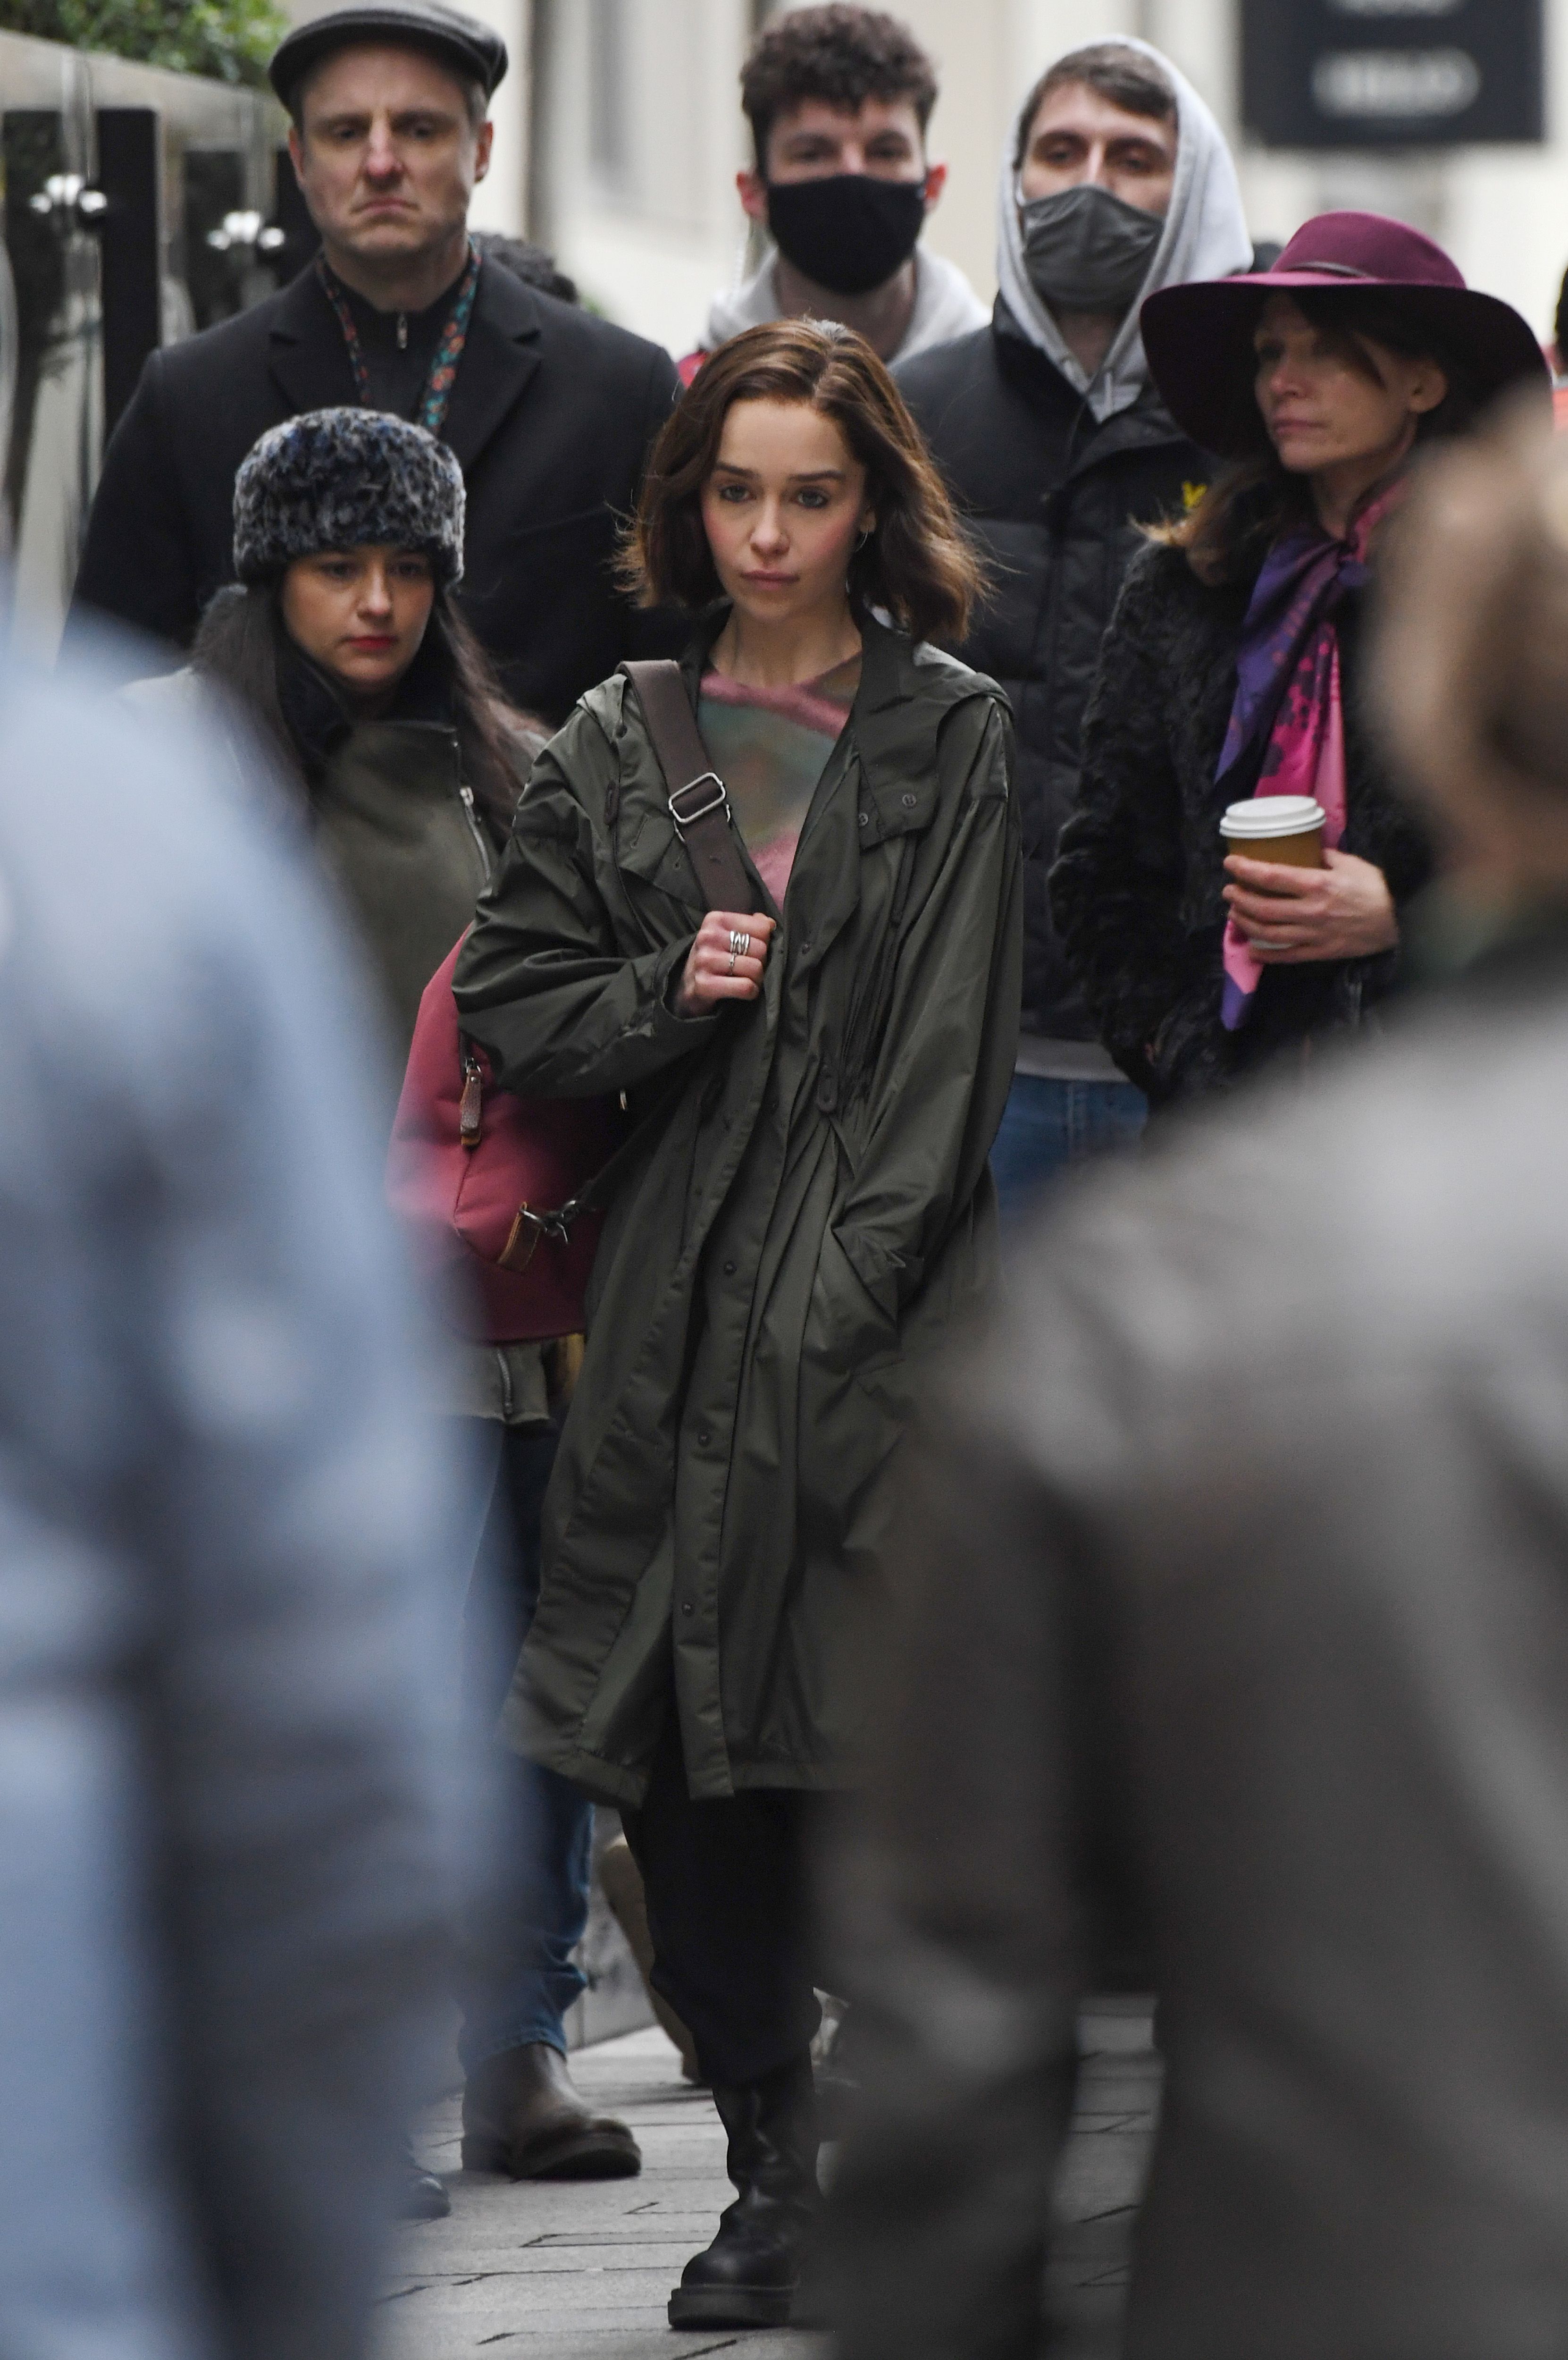 Emilia Clarke en pláticas para unirse al elenco de la nueva serie de  Marvel, 'Secret invasion